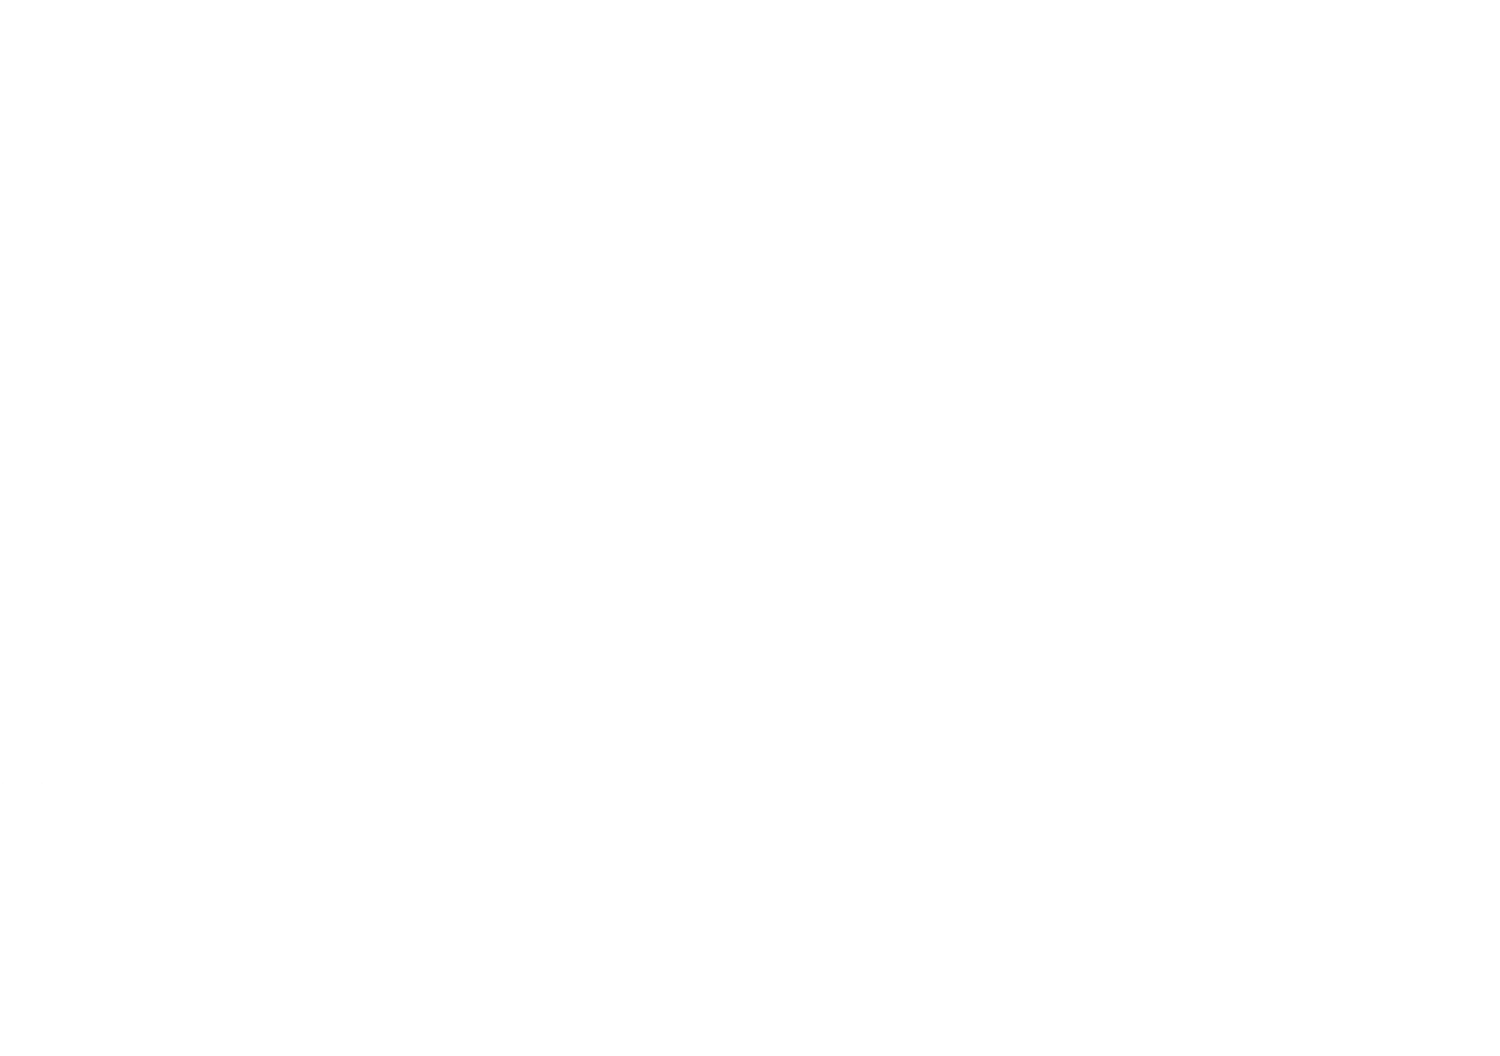 Société d'Histoire de la lorraine et du Musée Lorrain